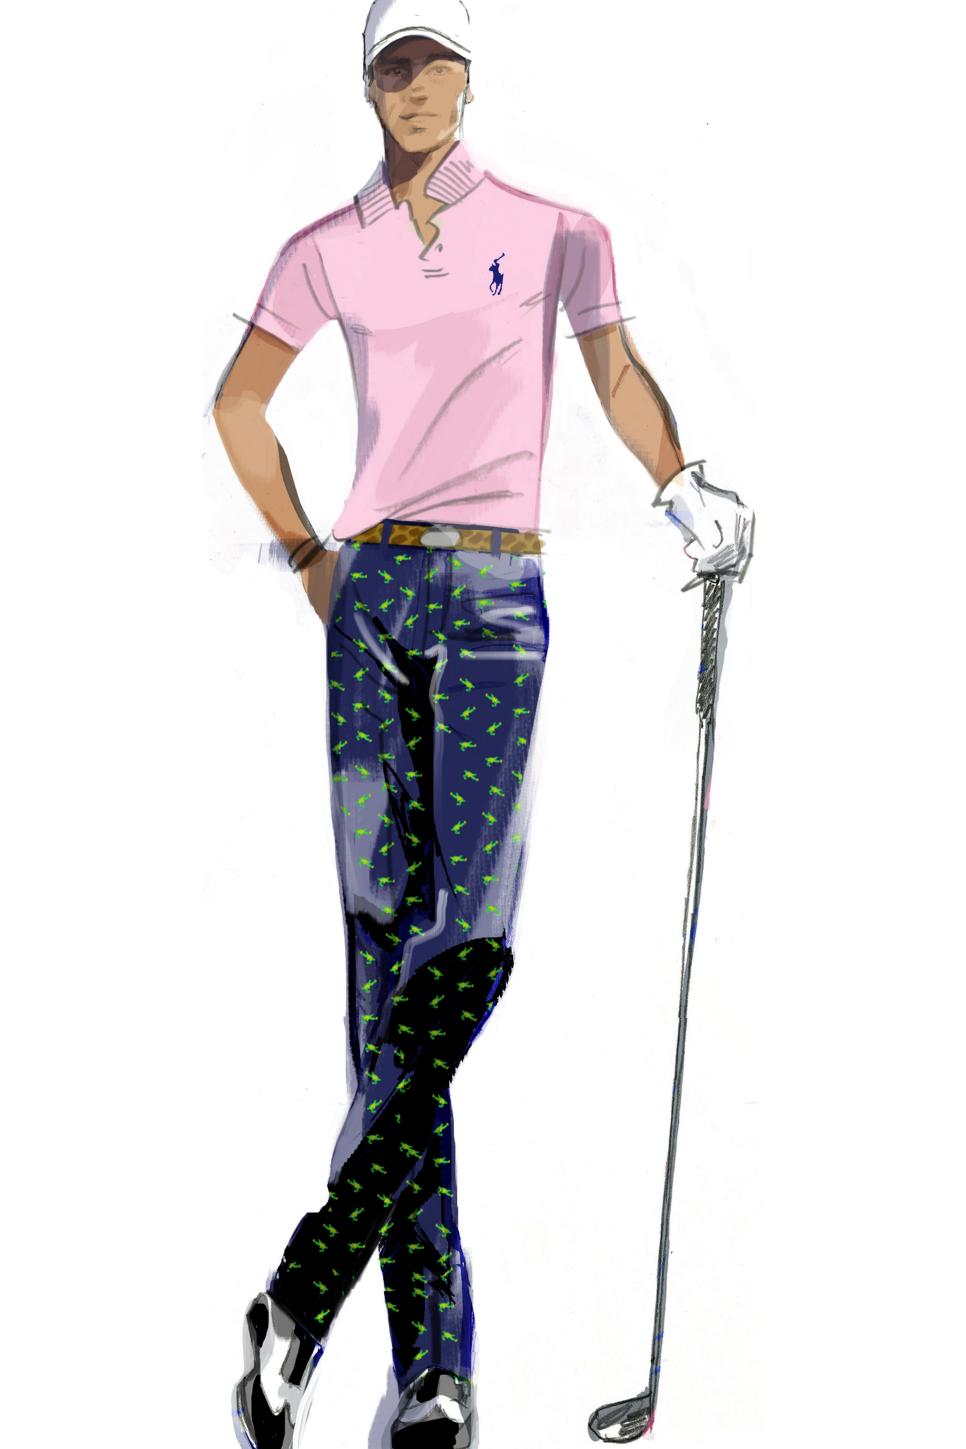 RLX Ralph Lauren Athletic Stretch Printed Golf Shorts - Club Bag Sketch